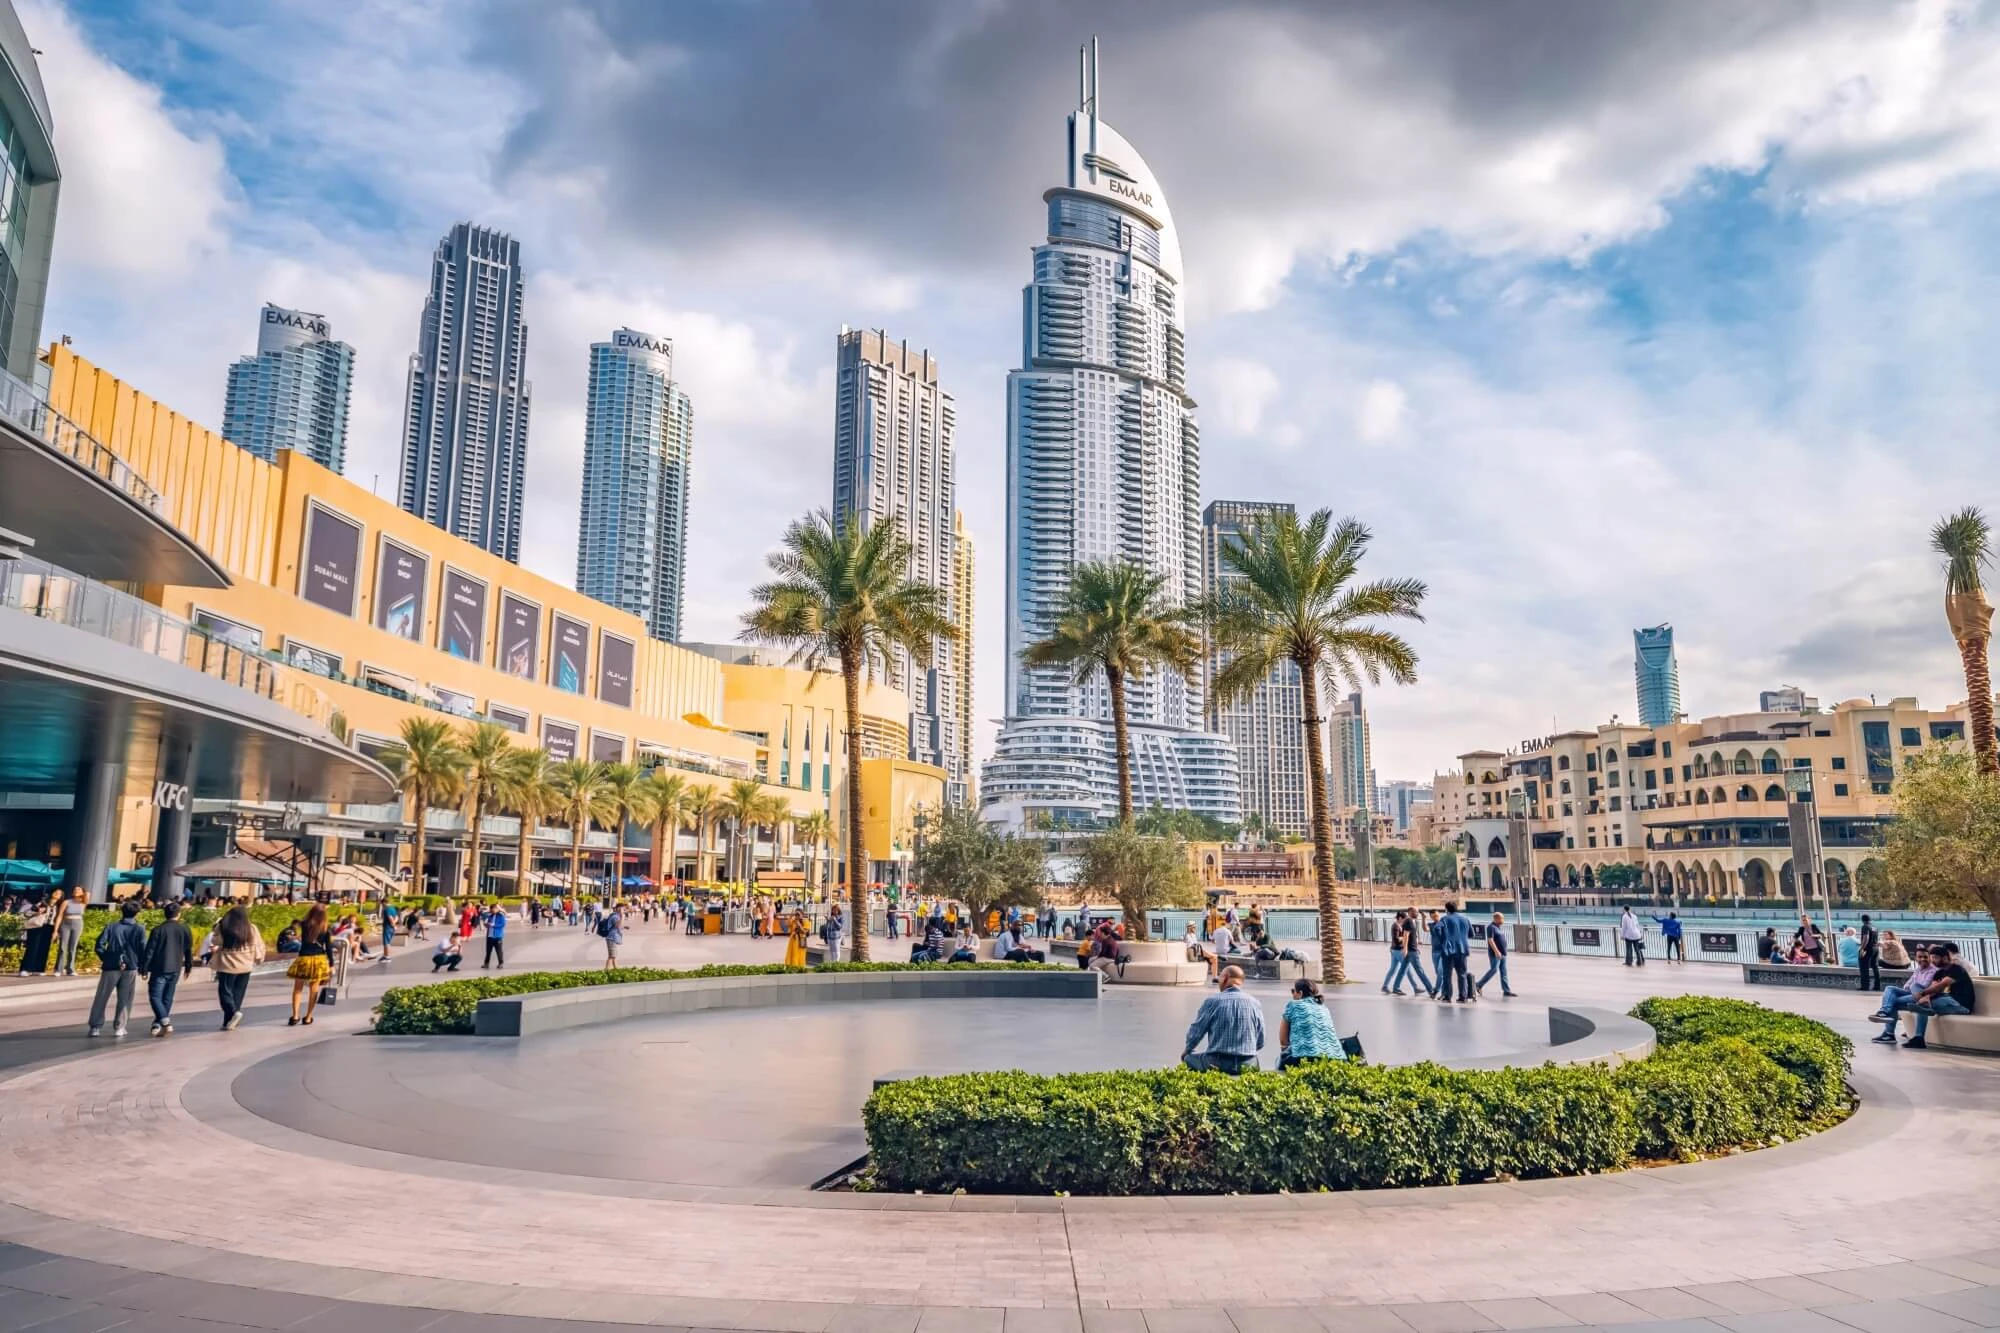 Alles, was Sie vor Ihrem Besuch über die Dubai Mall wissen sollten